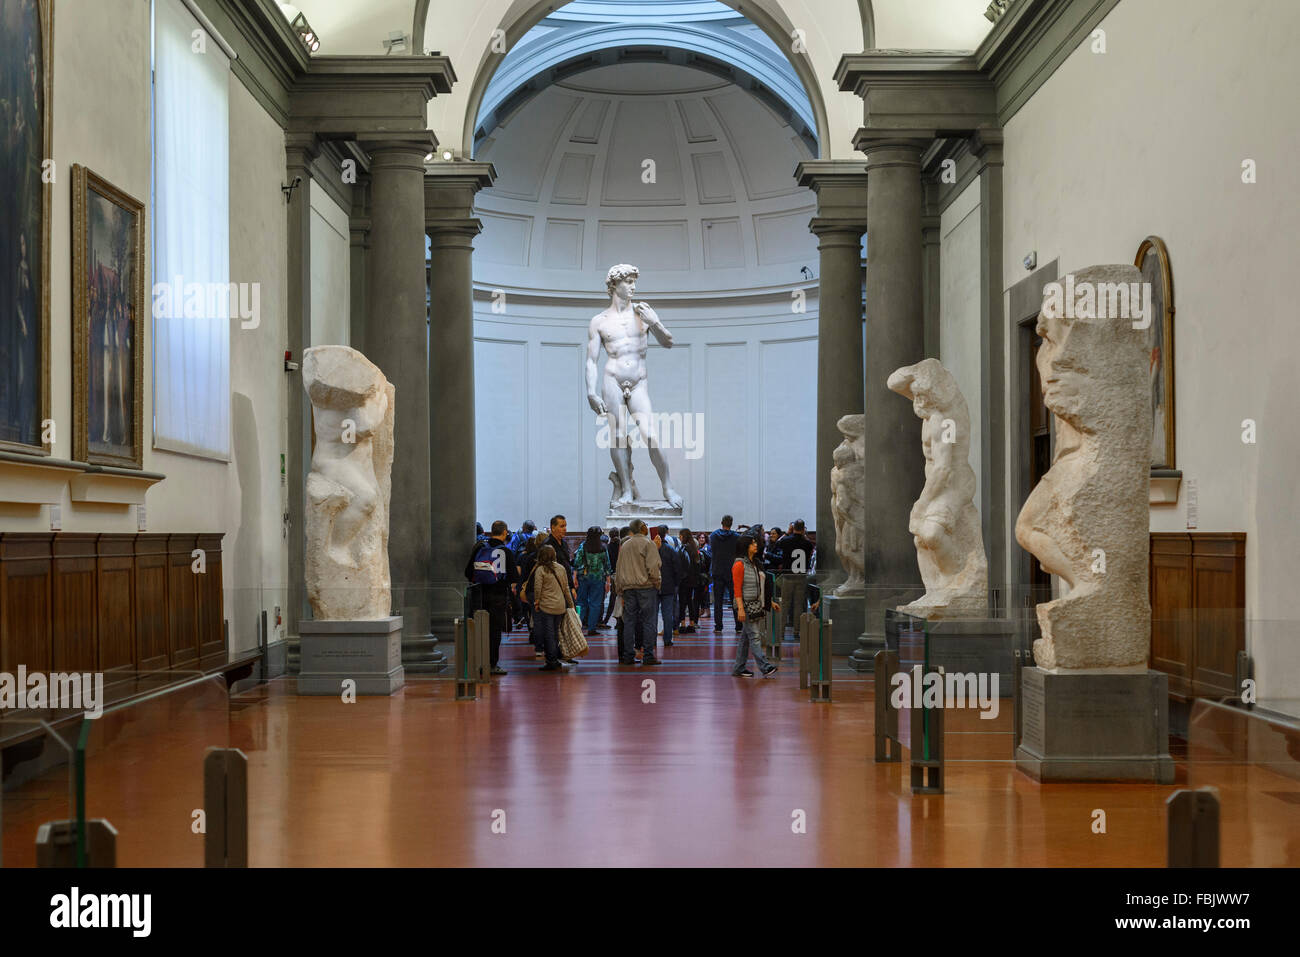 Florenz. Italien. Touristen besuchen Michelangelos Statue des David in der Galleria dell'Accademia Museum. Galerie der Akademie von Florenz. Stockfoto